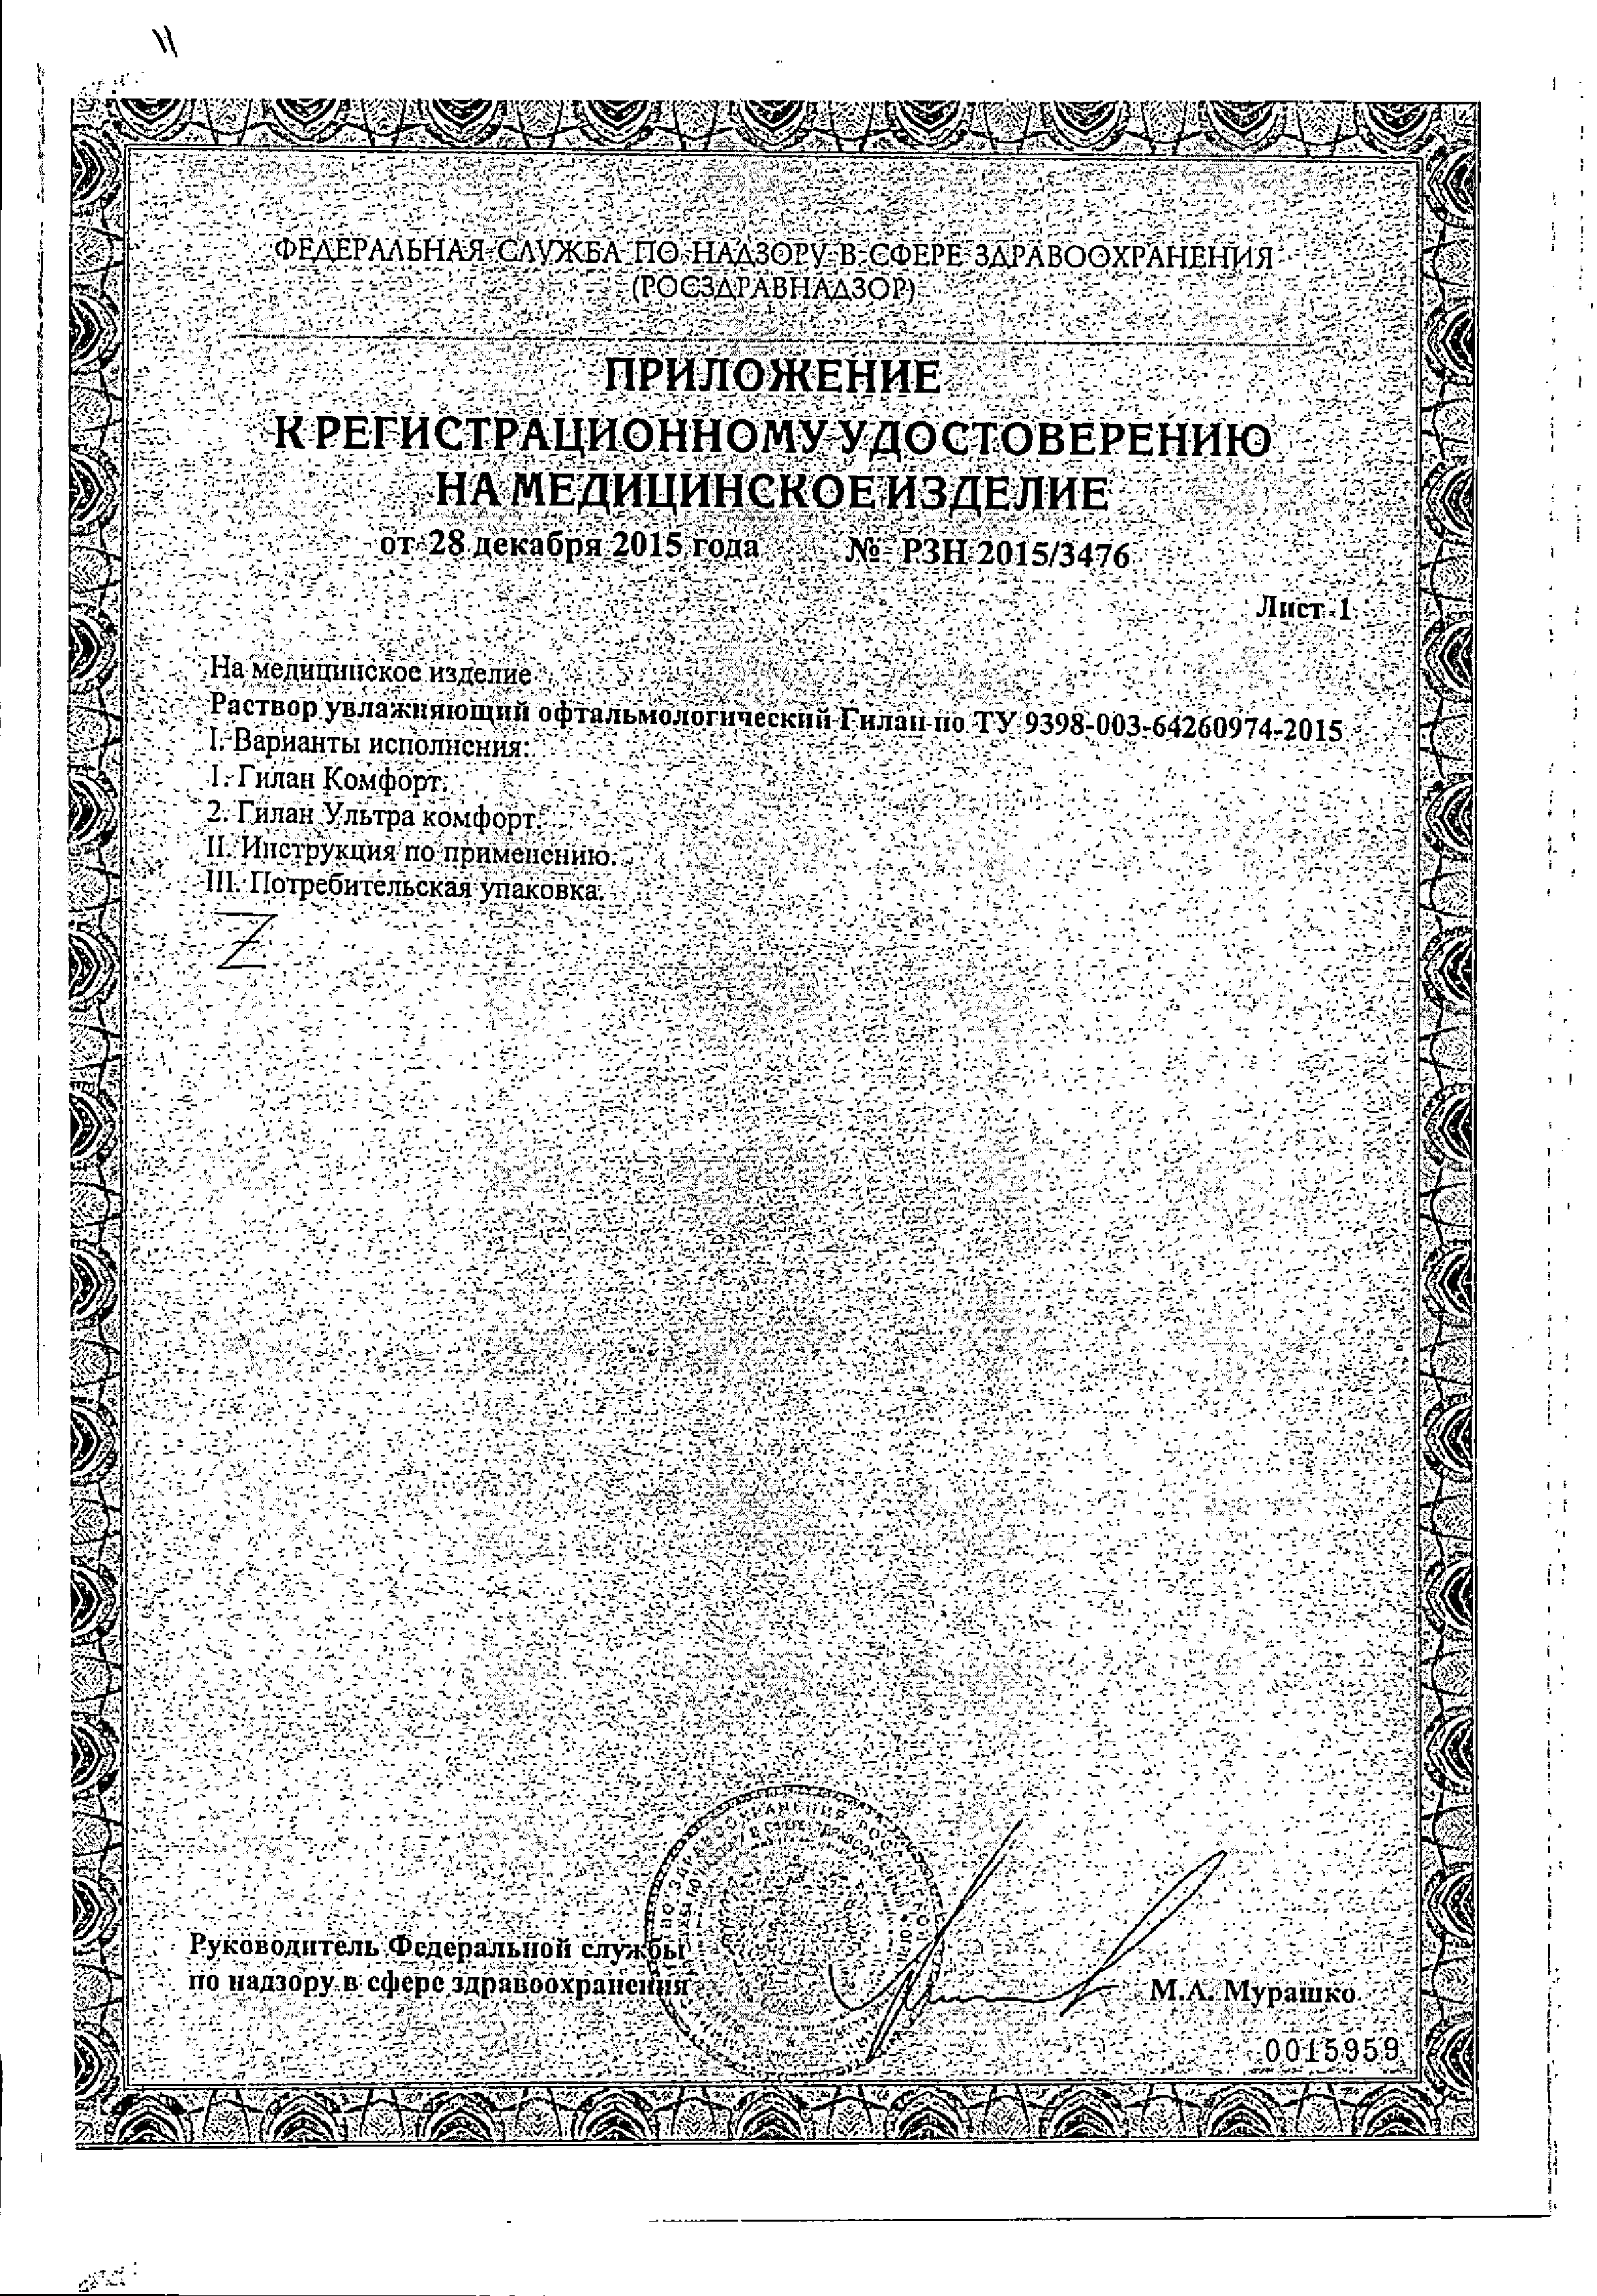 Гилан Ультра комфорт сертификат